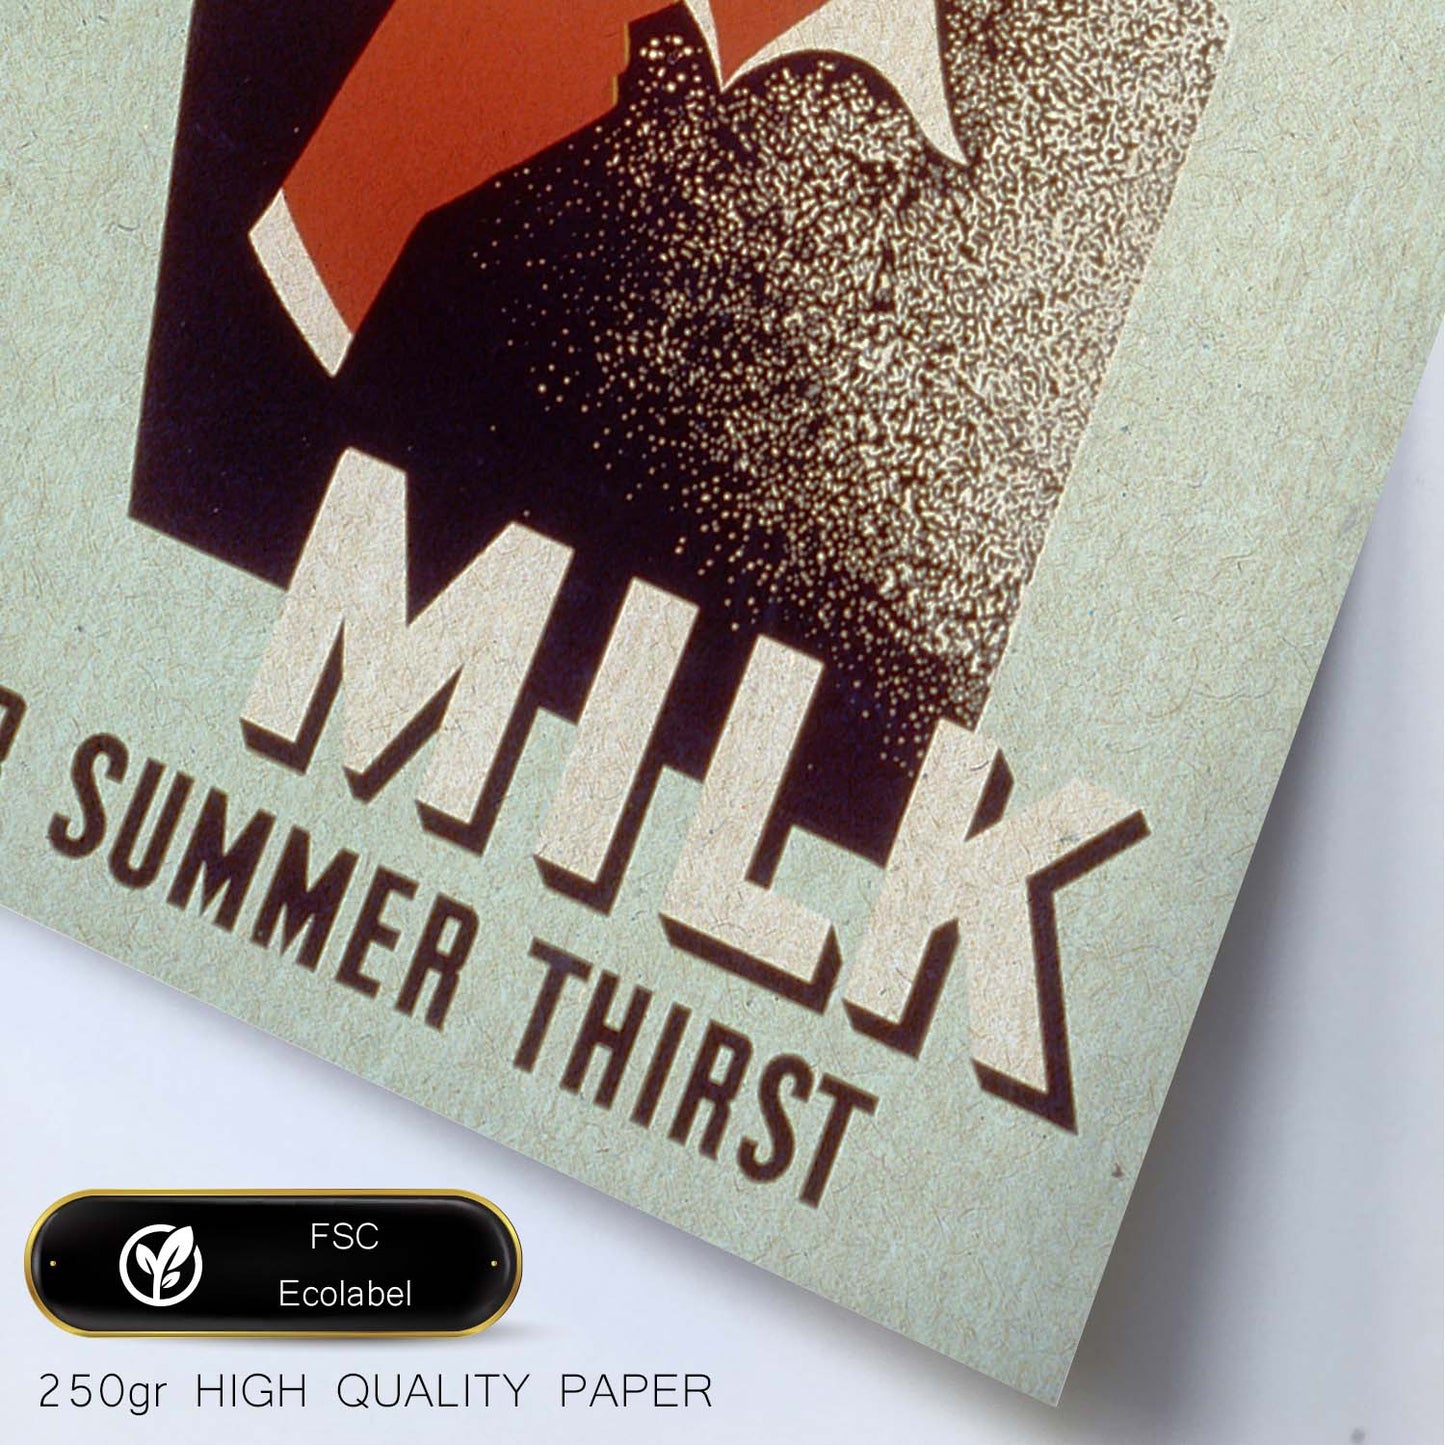 Poster vintage. Cartel vintage educacional sobre el habito "Milk for the summer thirst".-Artwork-Nacnic-Nacnic Estudio SL